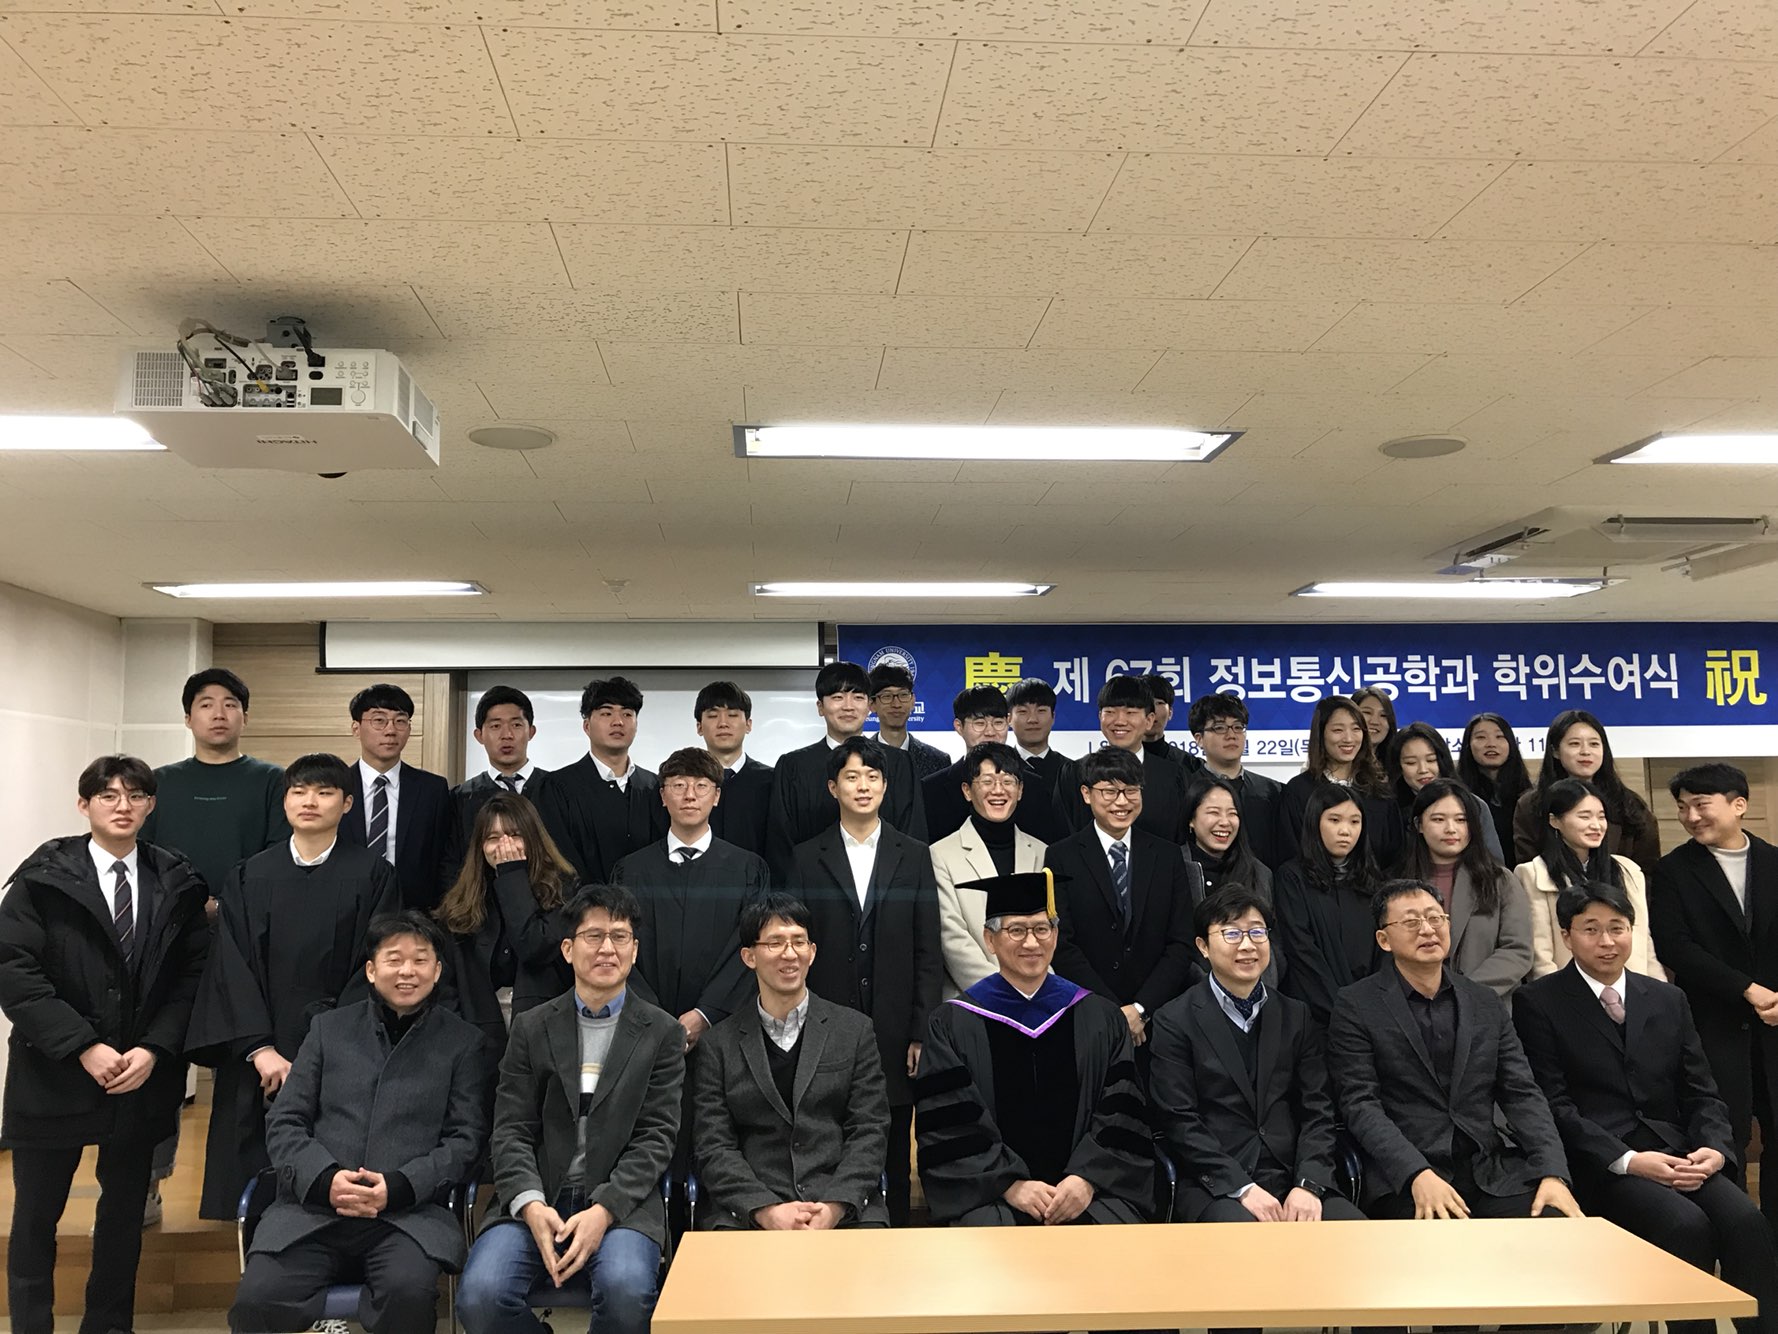 2017학년도 전기 졸업식 사진